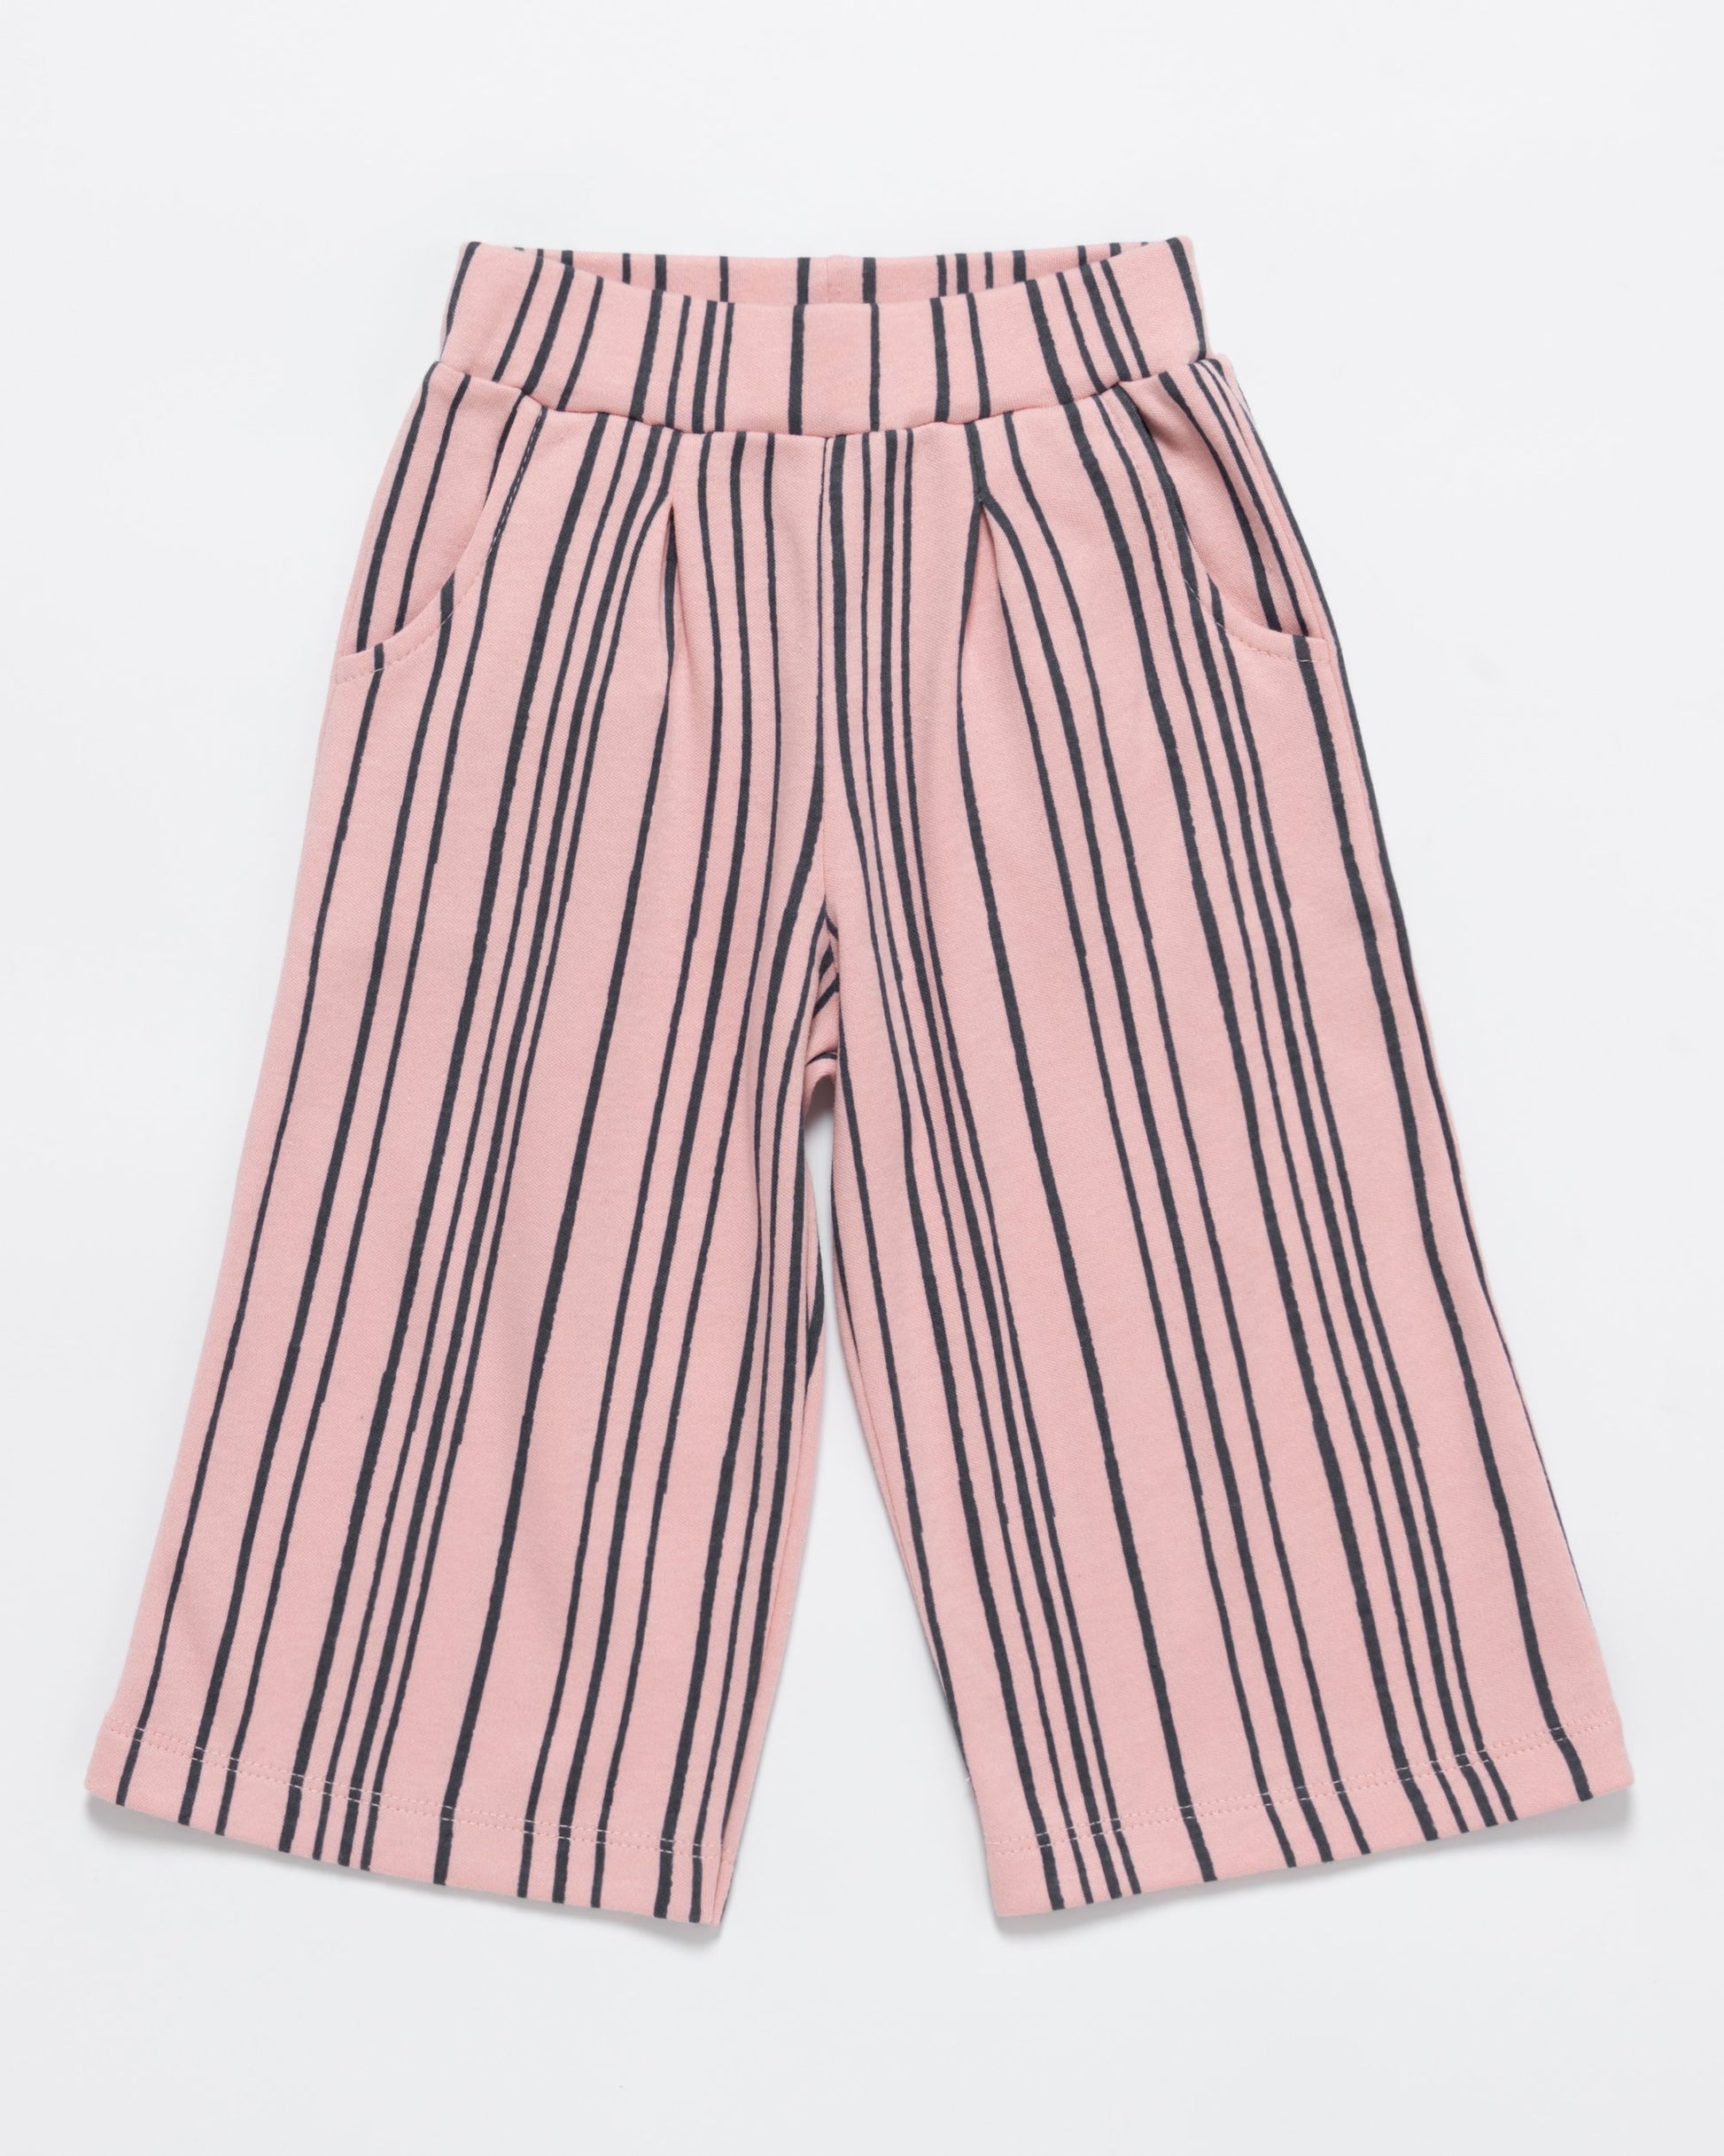 Artie - Super Stripey Wide Leg Trousers in Pink & Navy - Stylemykid.com